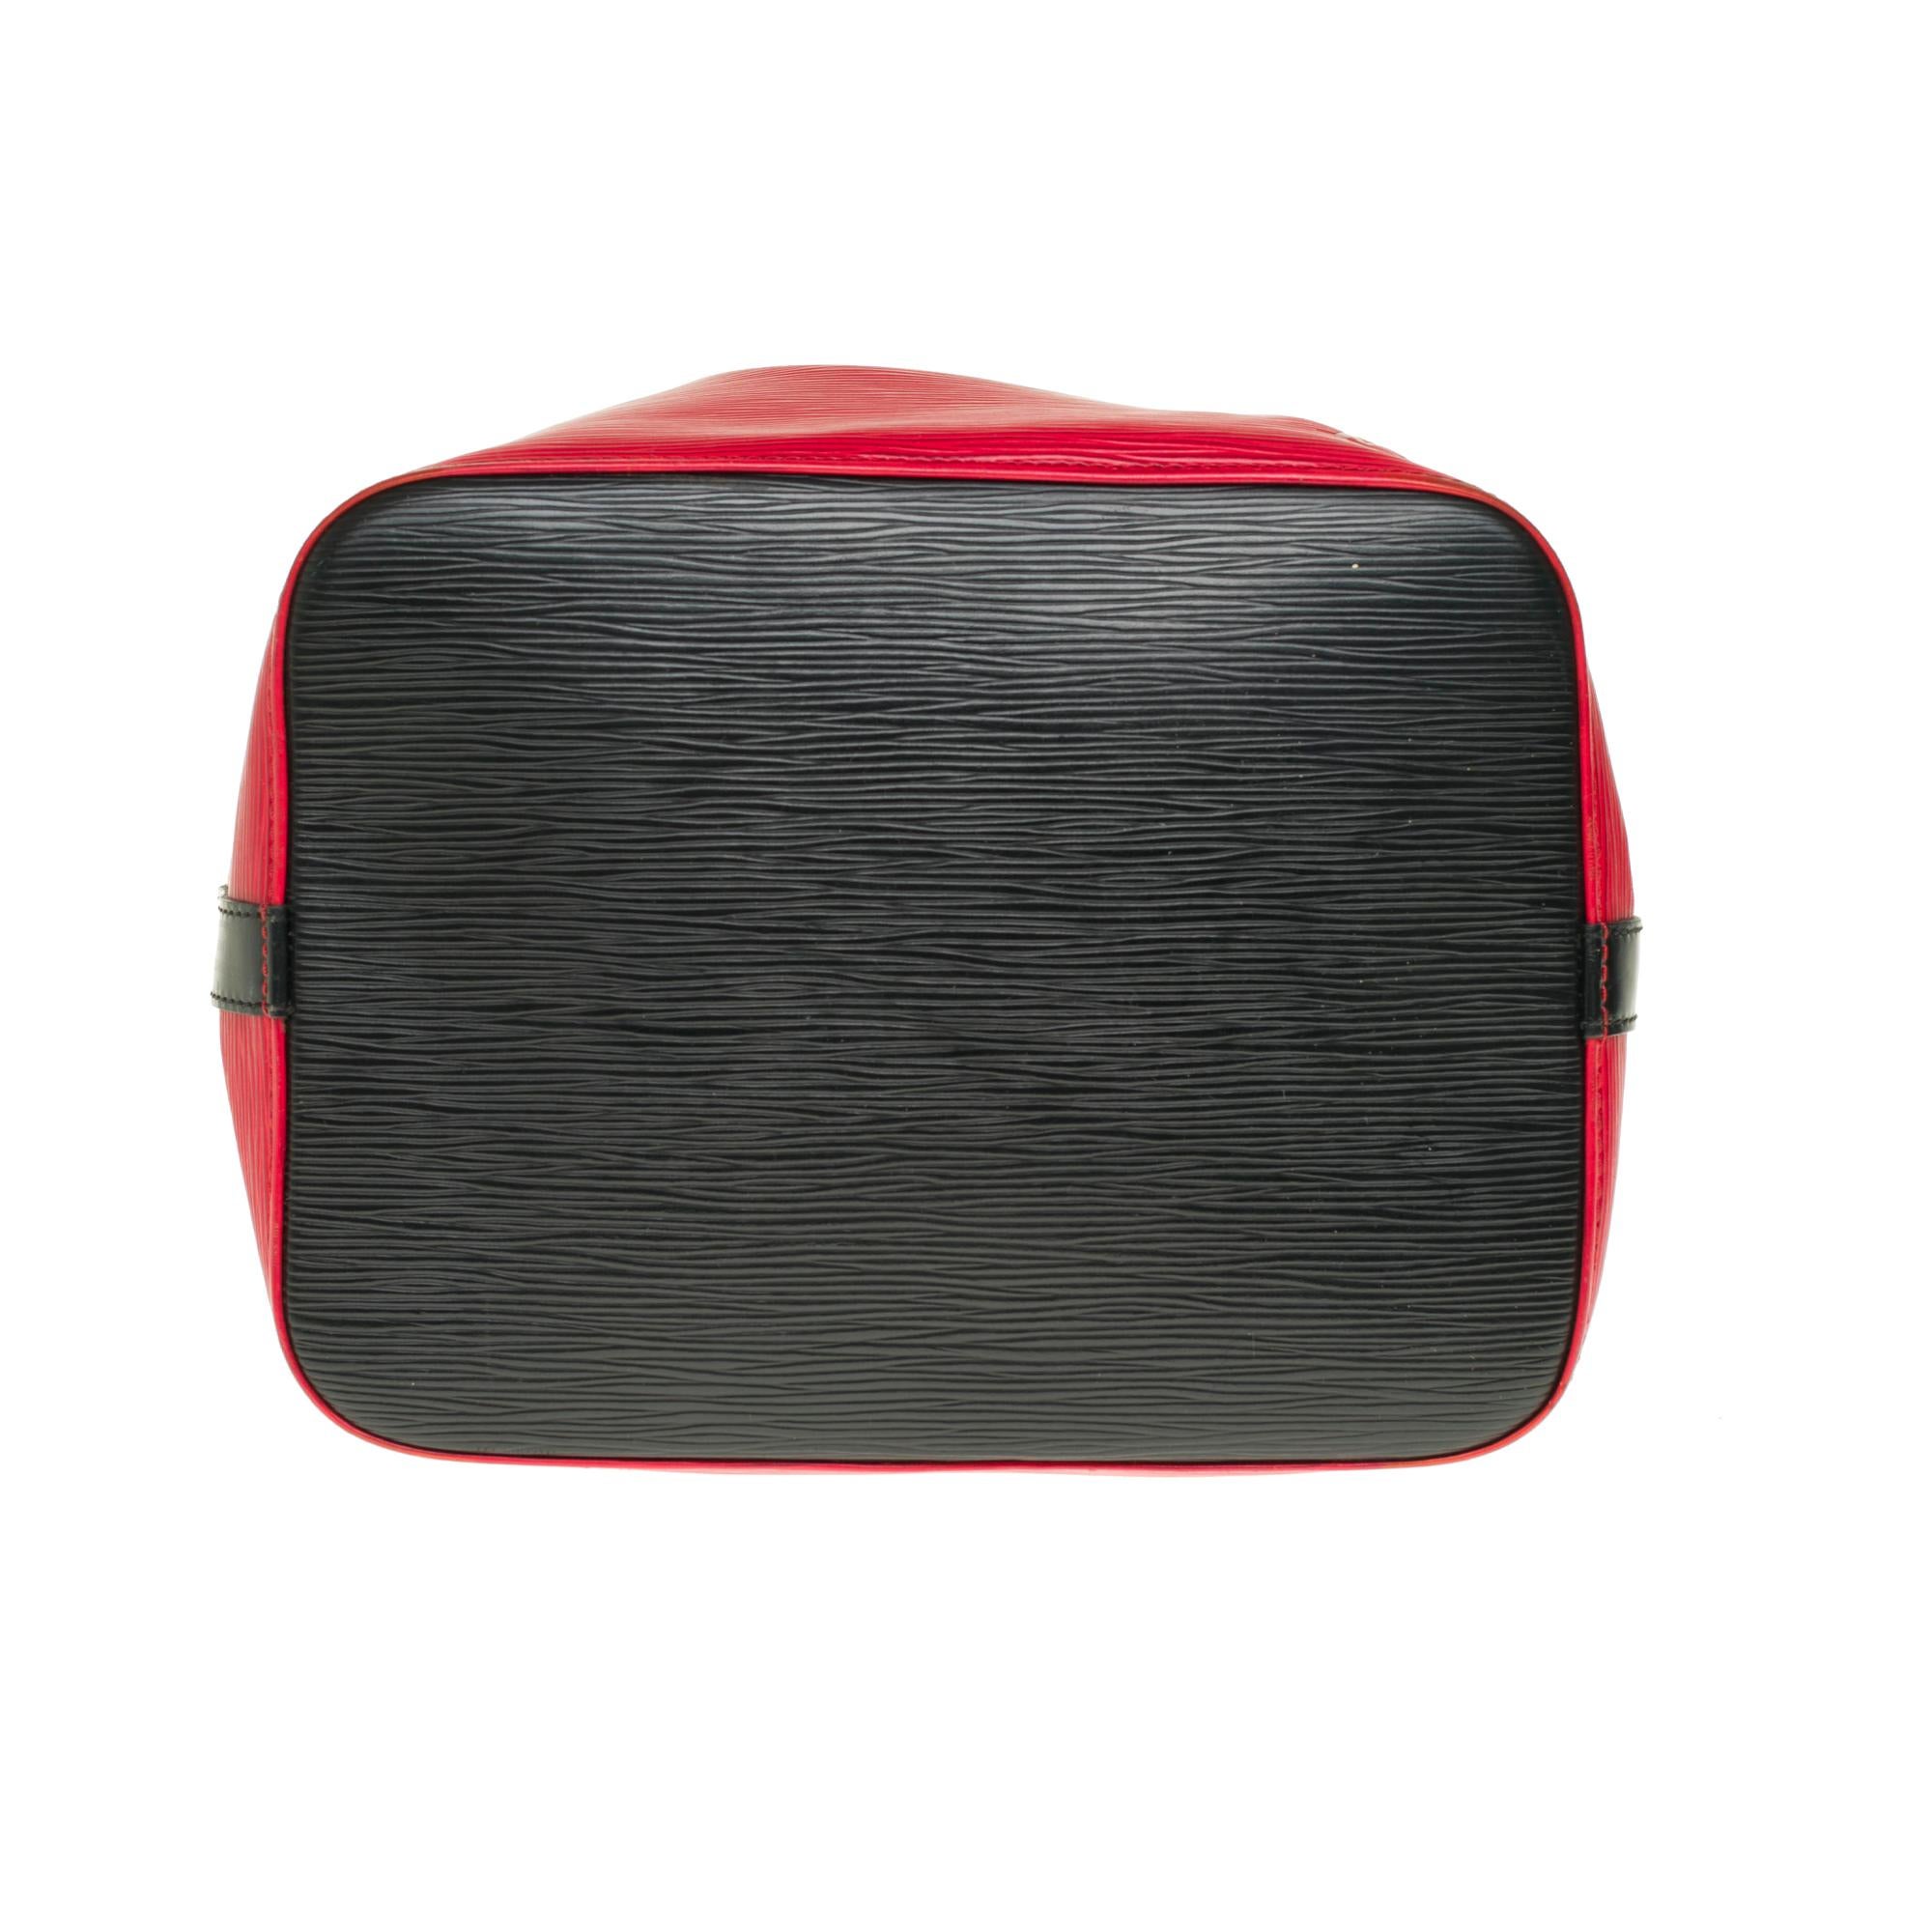 Louis Vuitton Noé PM shoulder bag in red & black epi leather, gold hardware 1